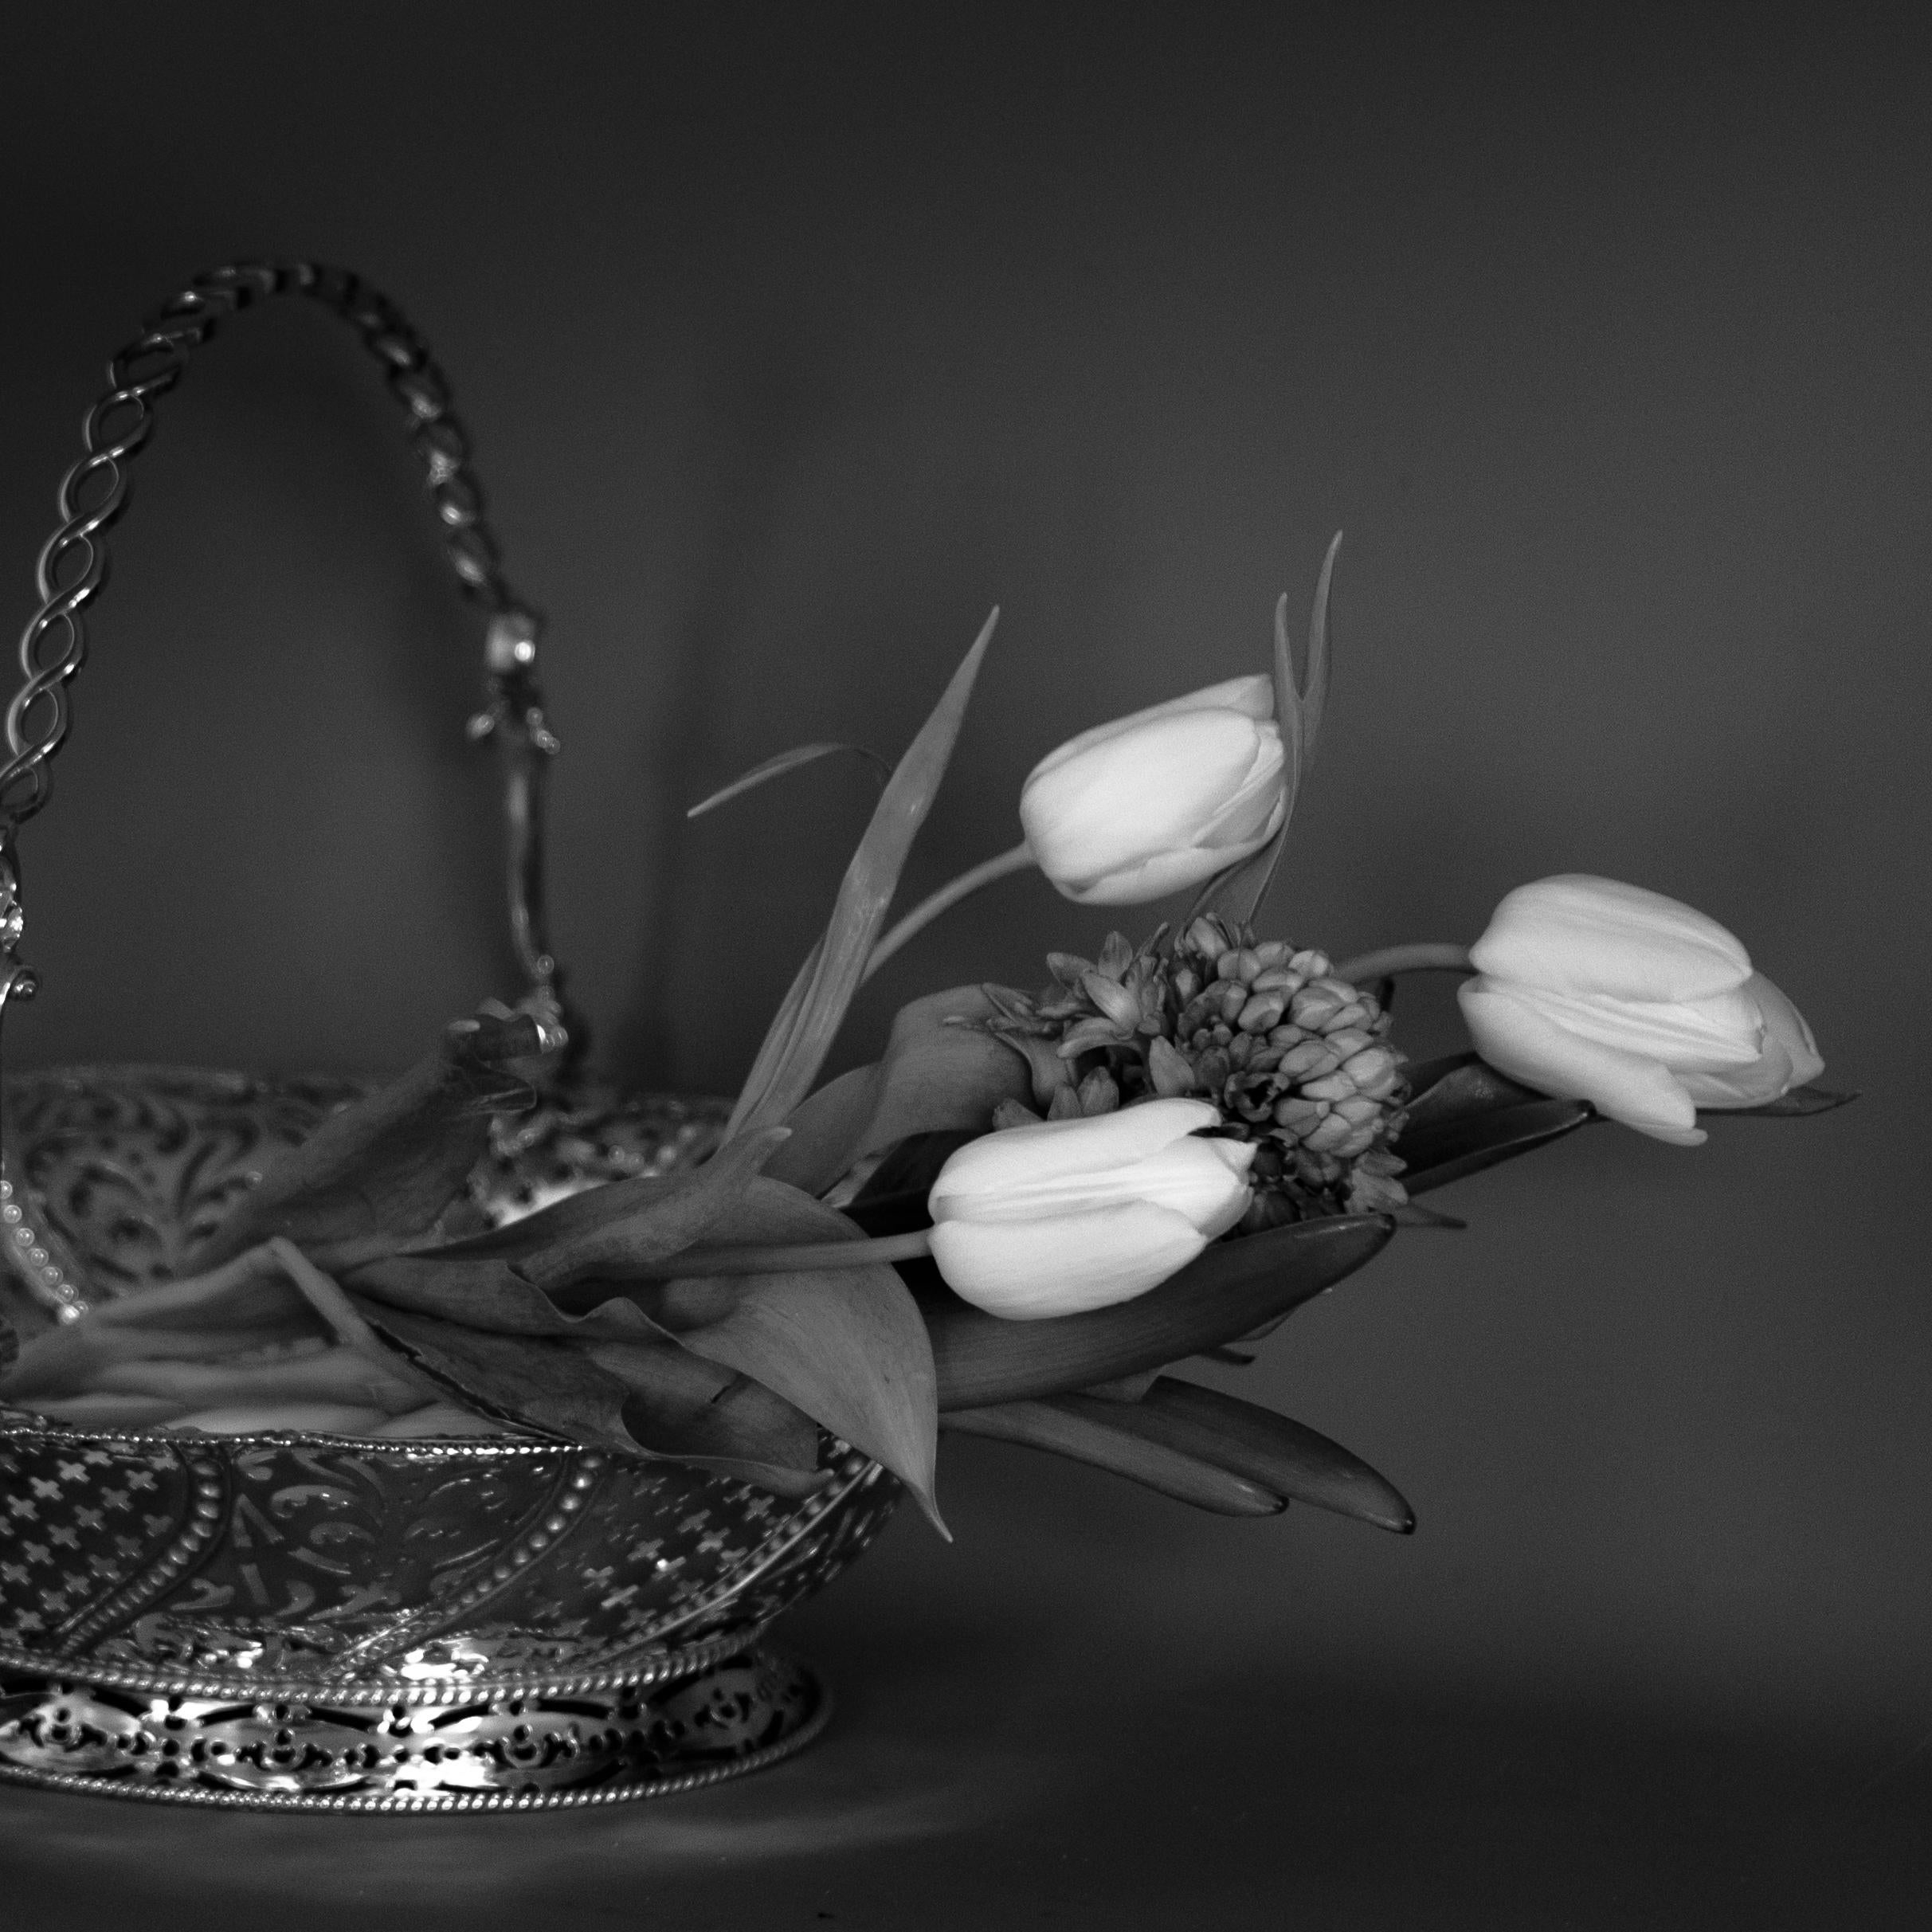 Silberkorb 1761, weiße Tulpen, blaue Hyazinthen'.
Limitierte Auflage (1 von 25) einer Schwarz-Weiß-Archivfotografie. Ungerahmt.
_________________
Sophias poetische Fotografien sind eine Erkundung des Gleichgewichts in allen Dingen: im sinnlichen